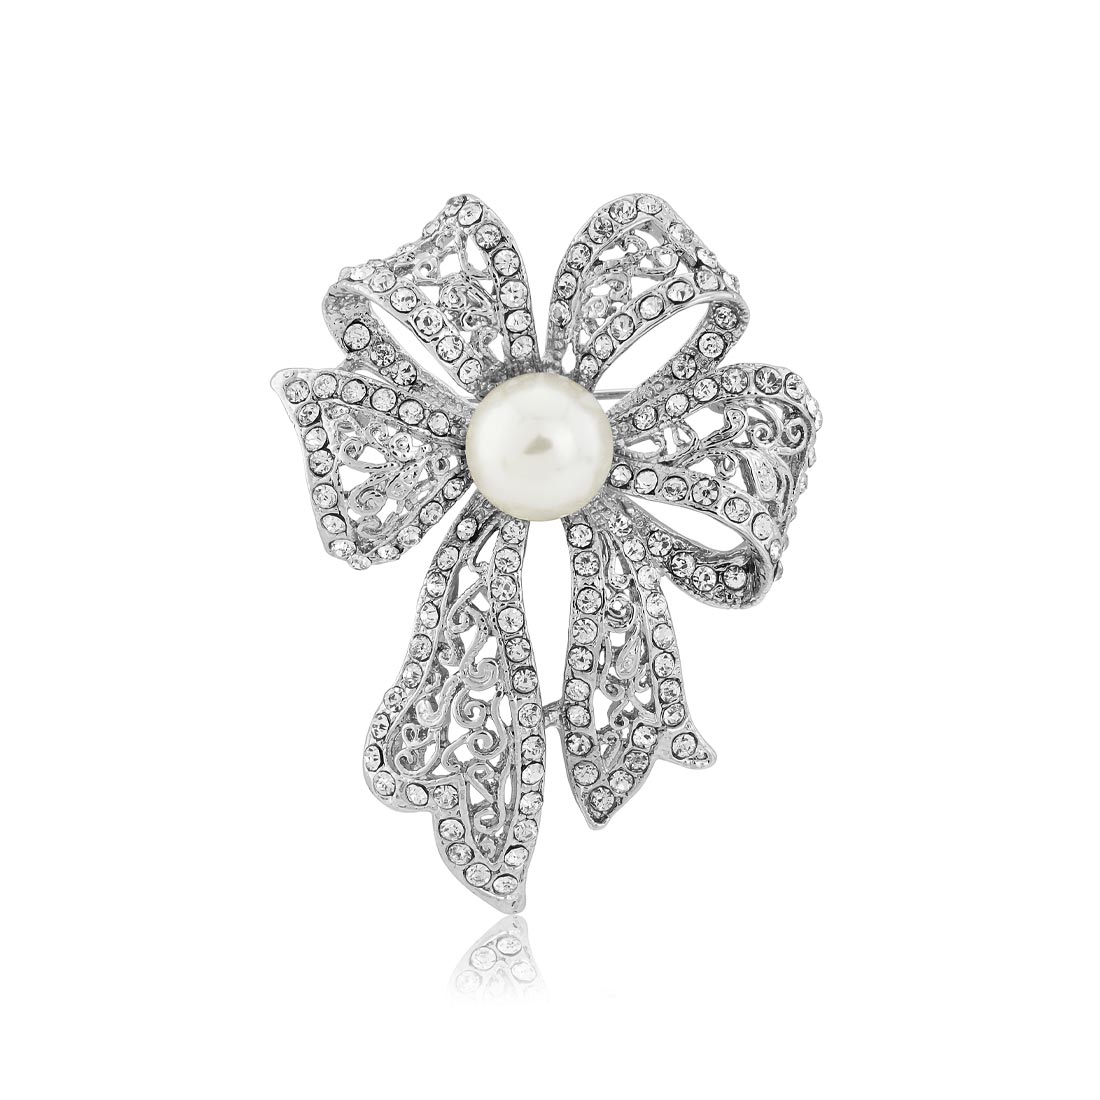 Starlet's Bow Ornate Crystal & Pearl Vintage Brooch